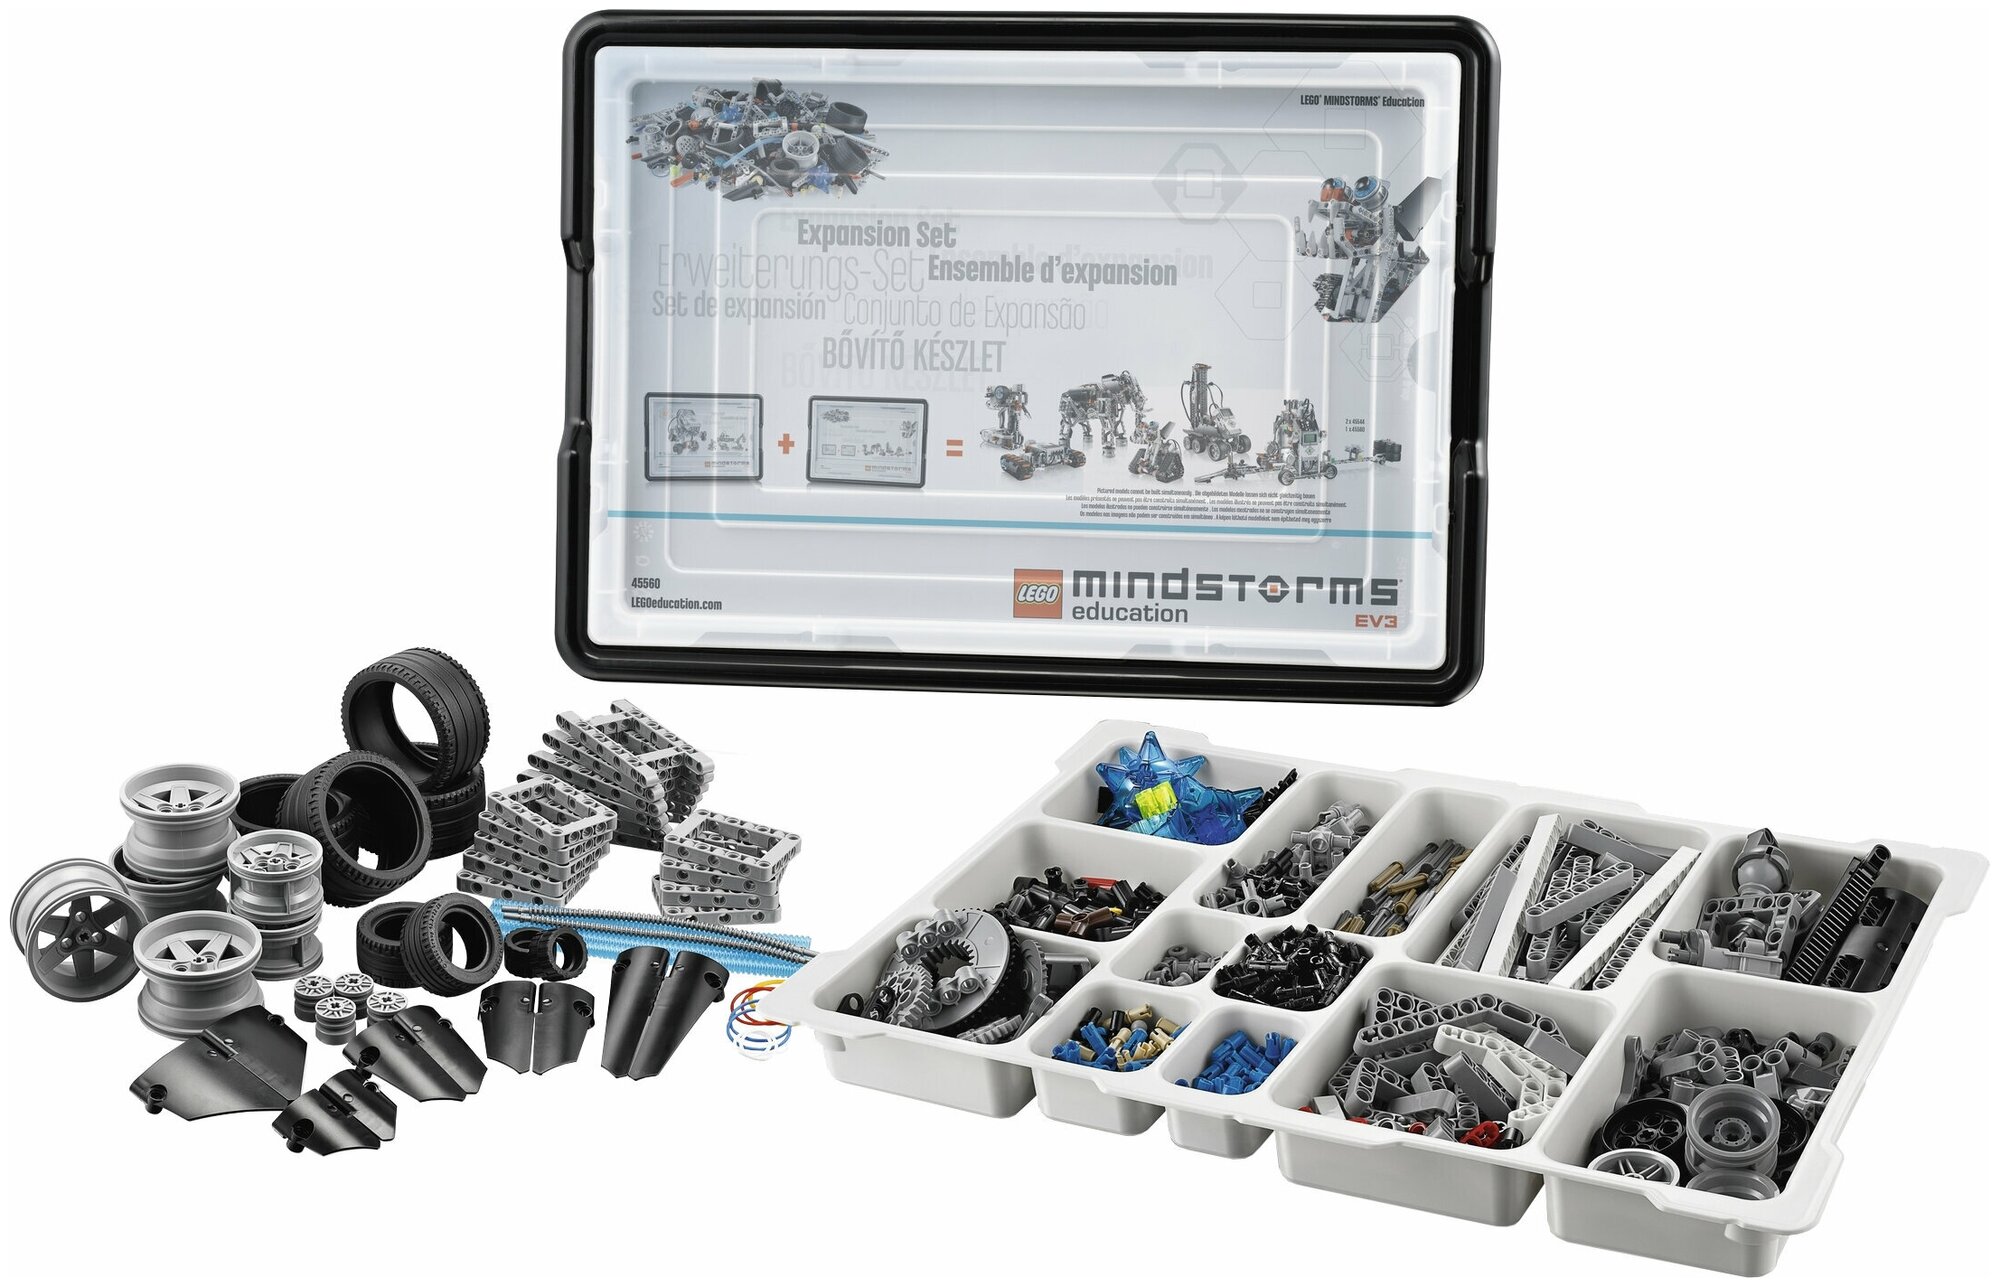 Ресурсный набор Mindstorms Education LEGO - фото №2